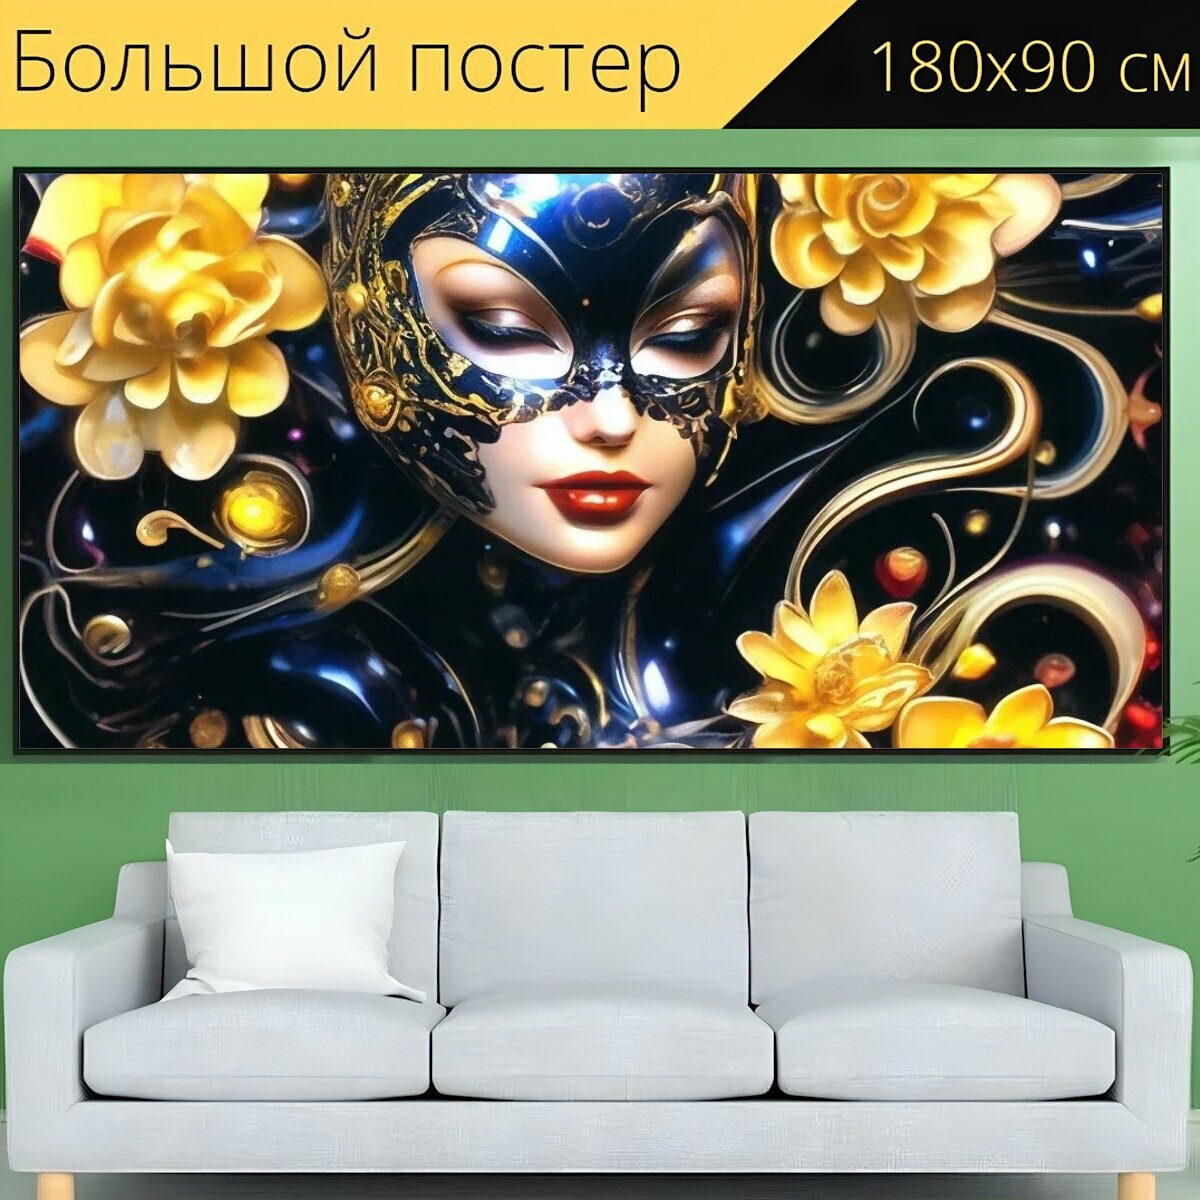 Большой постер Девочкам "Красота, Женщина в черном, Костюм кошки, женщина красивая" 180 x 90 см. для интерьера на стену